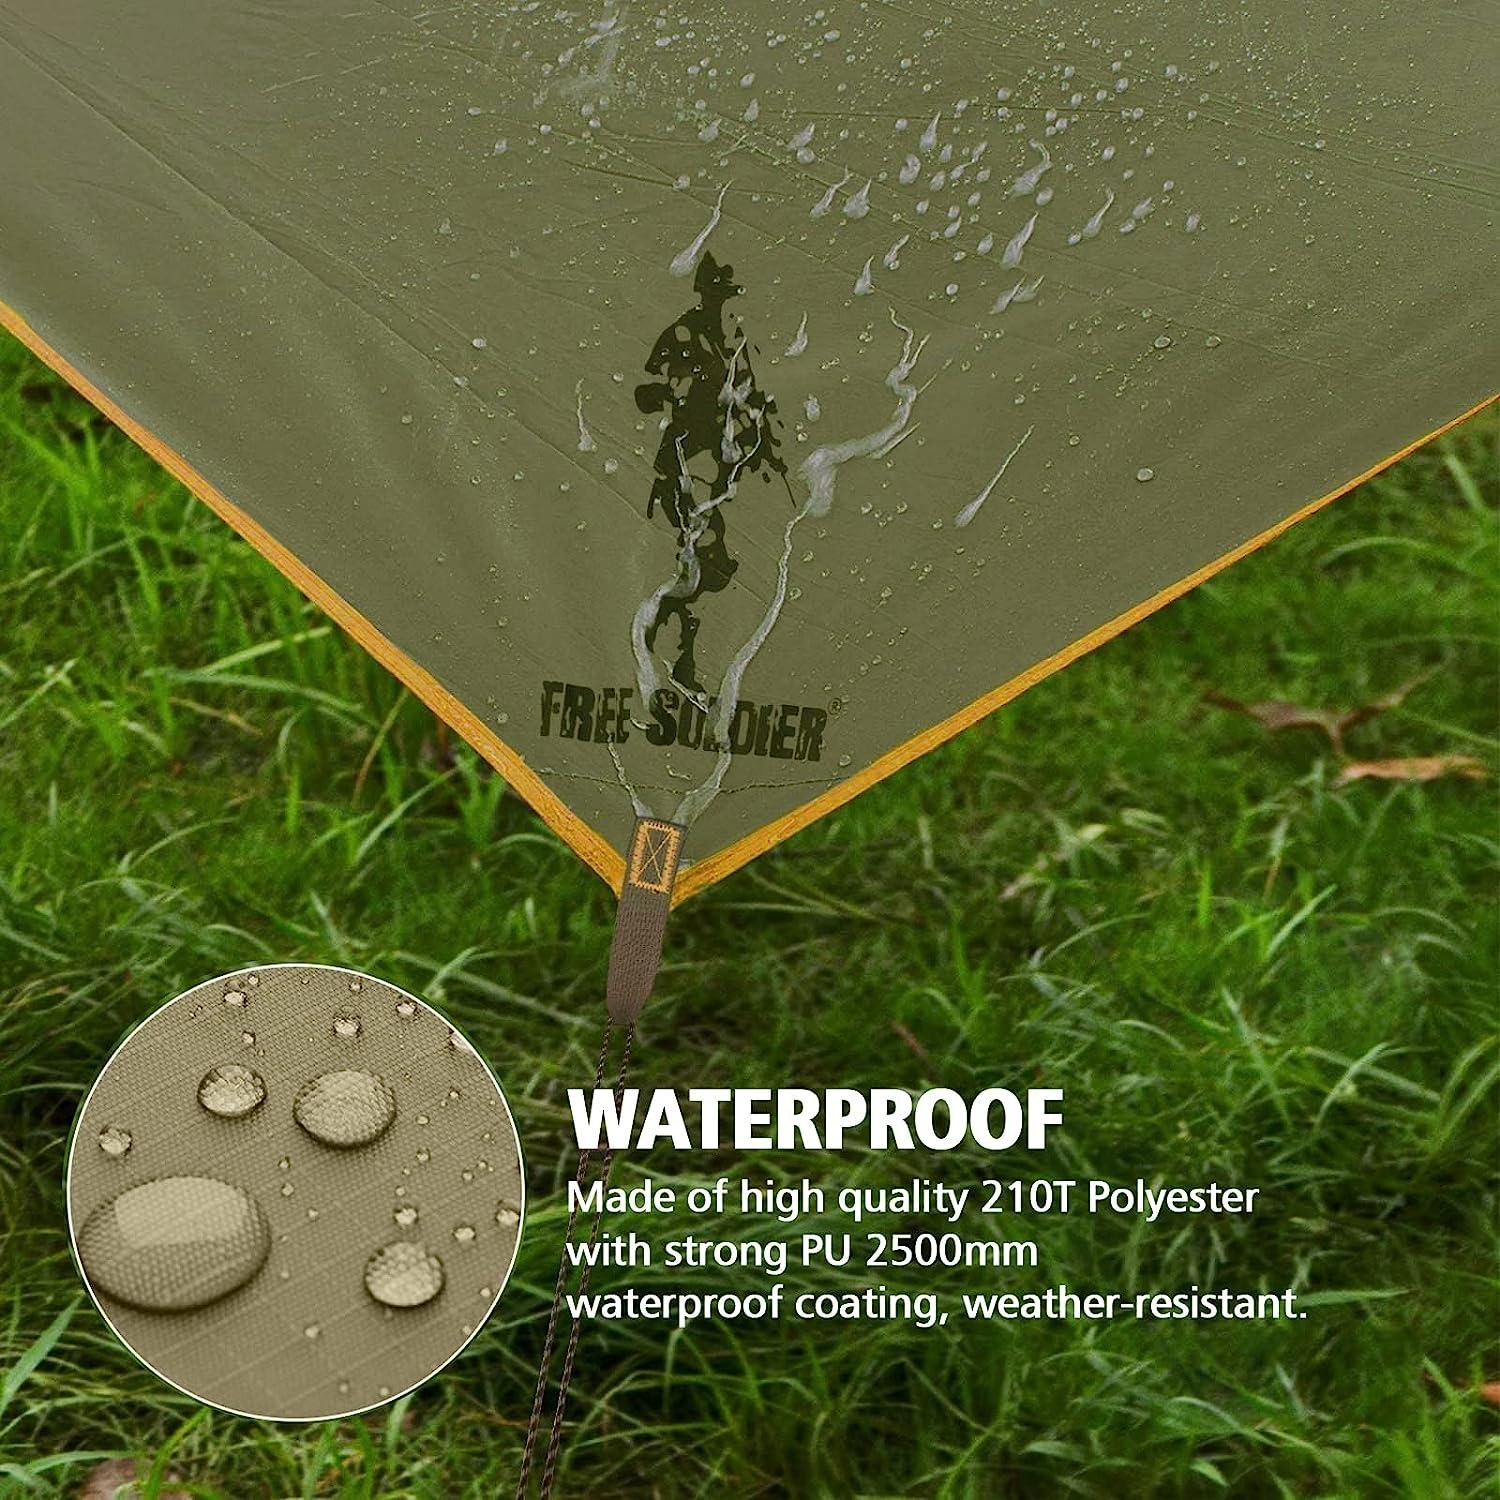 FREE SOLDIER Waterproof Portable Tarp Multifunctional Outdoor Camping  Traveling Awning Backpacking Tarp Shelter Rain Tarp Brown